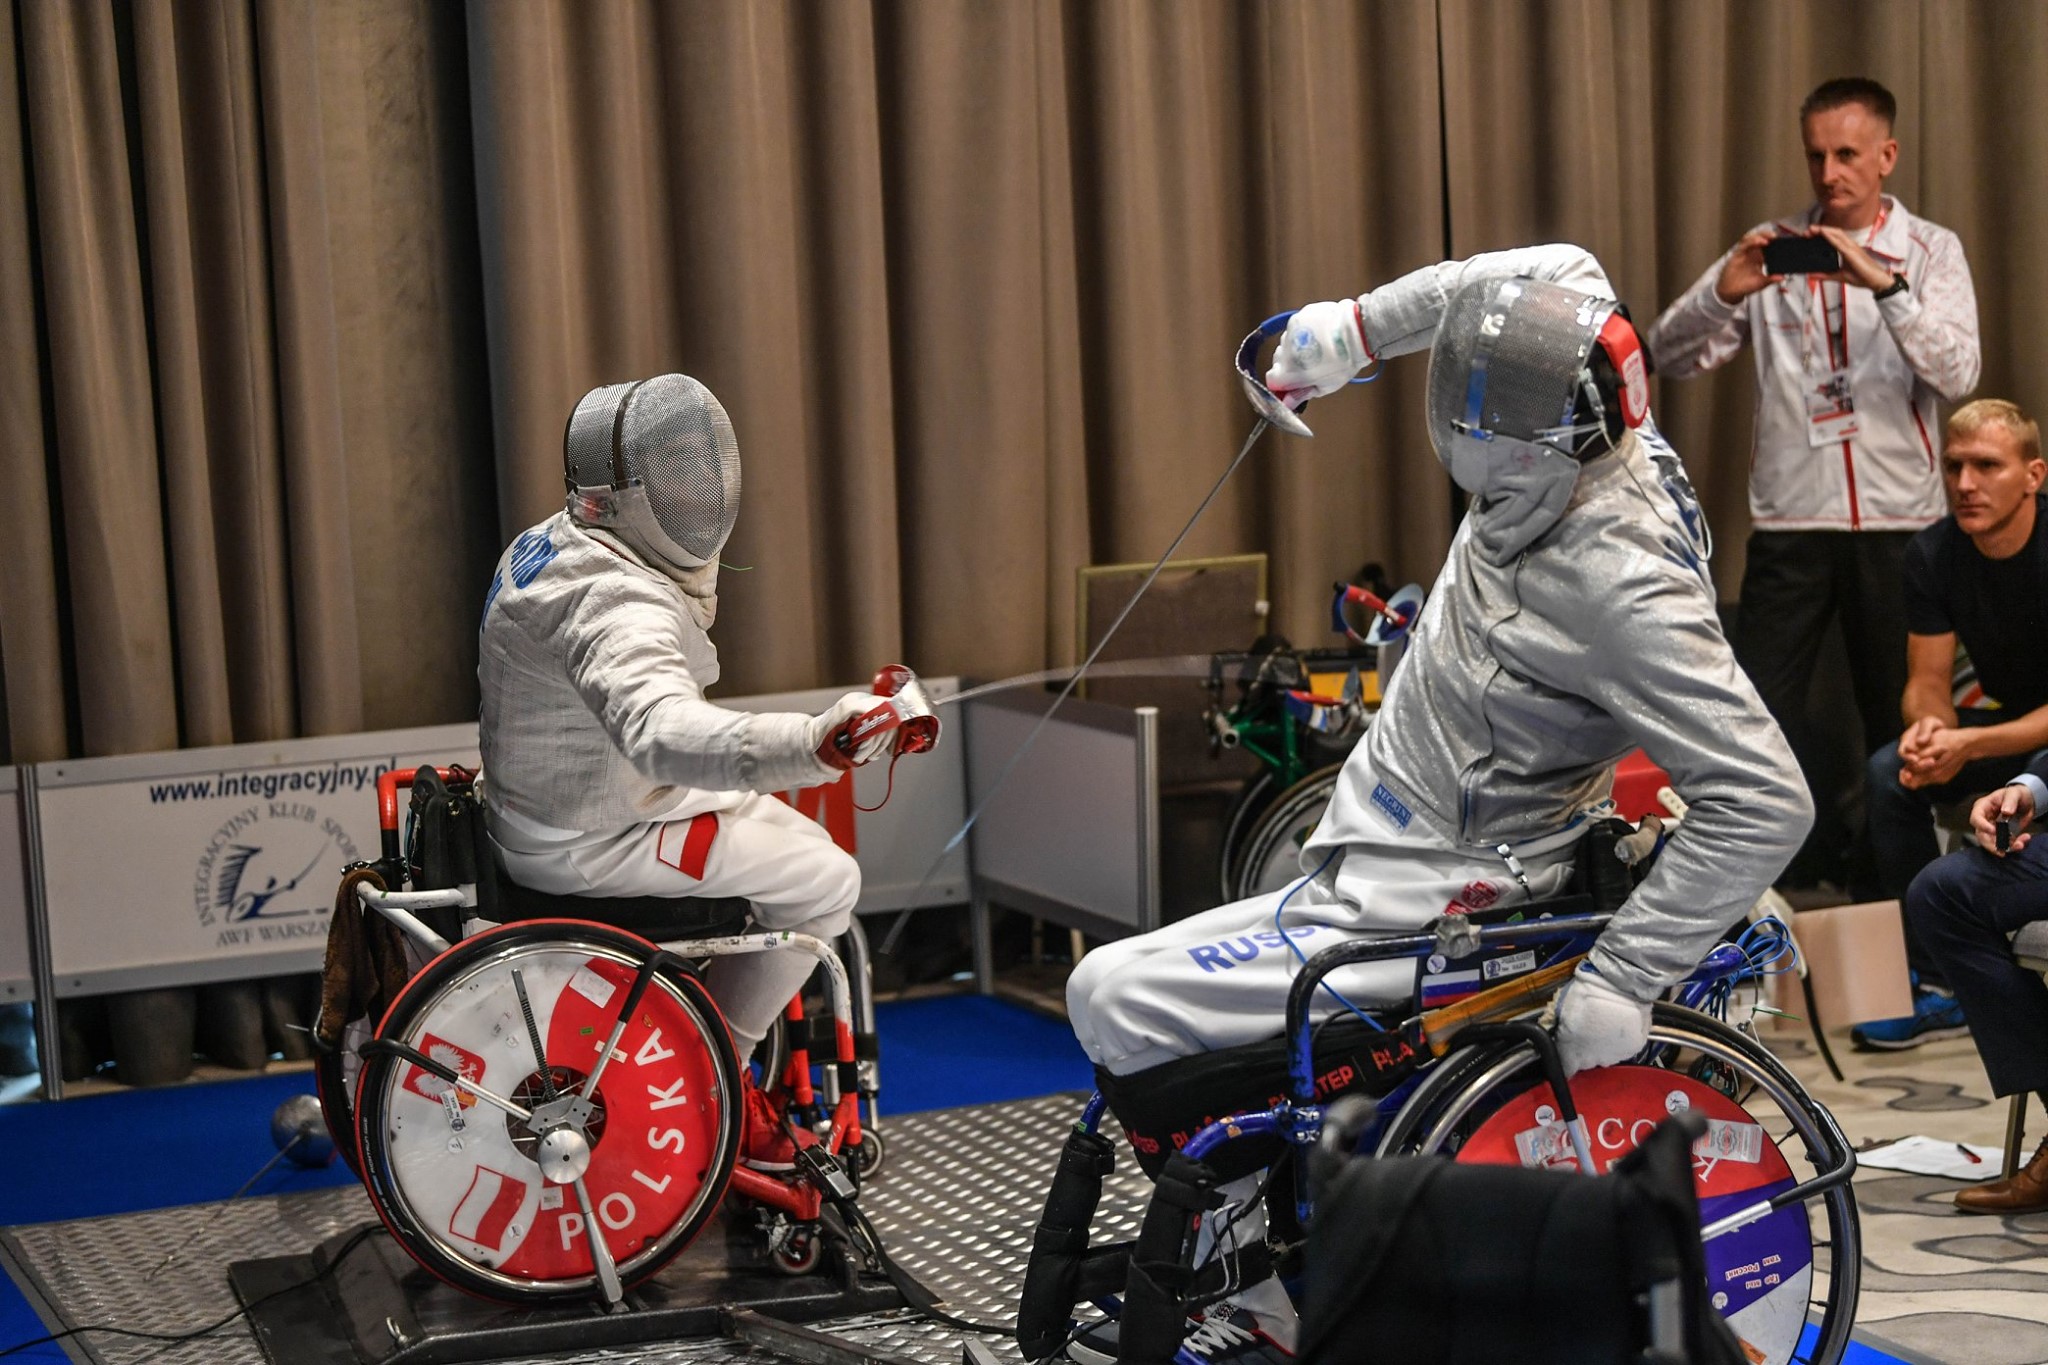 Na zdjęciu znajduje się dwóch mężczyzn na wózkach w trakcie pojedynku szermierskiego.